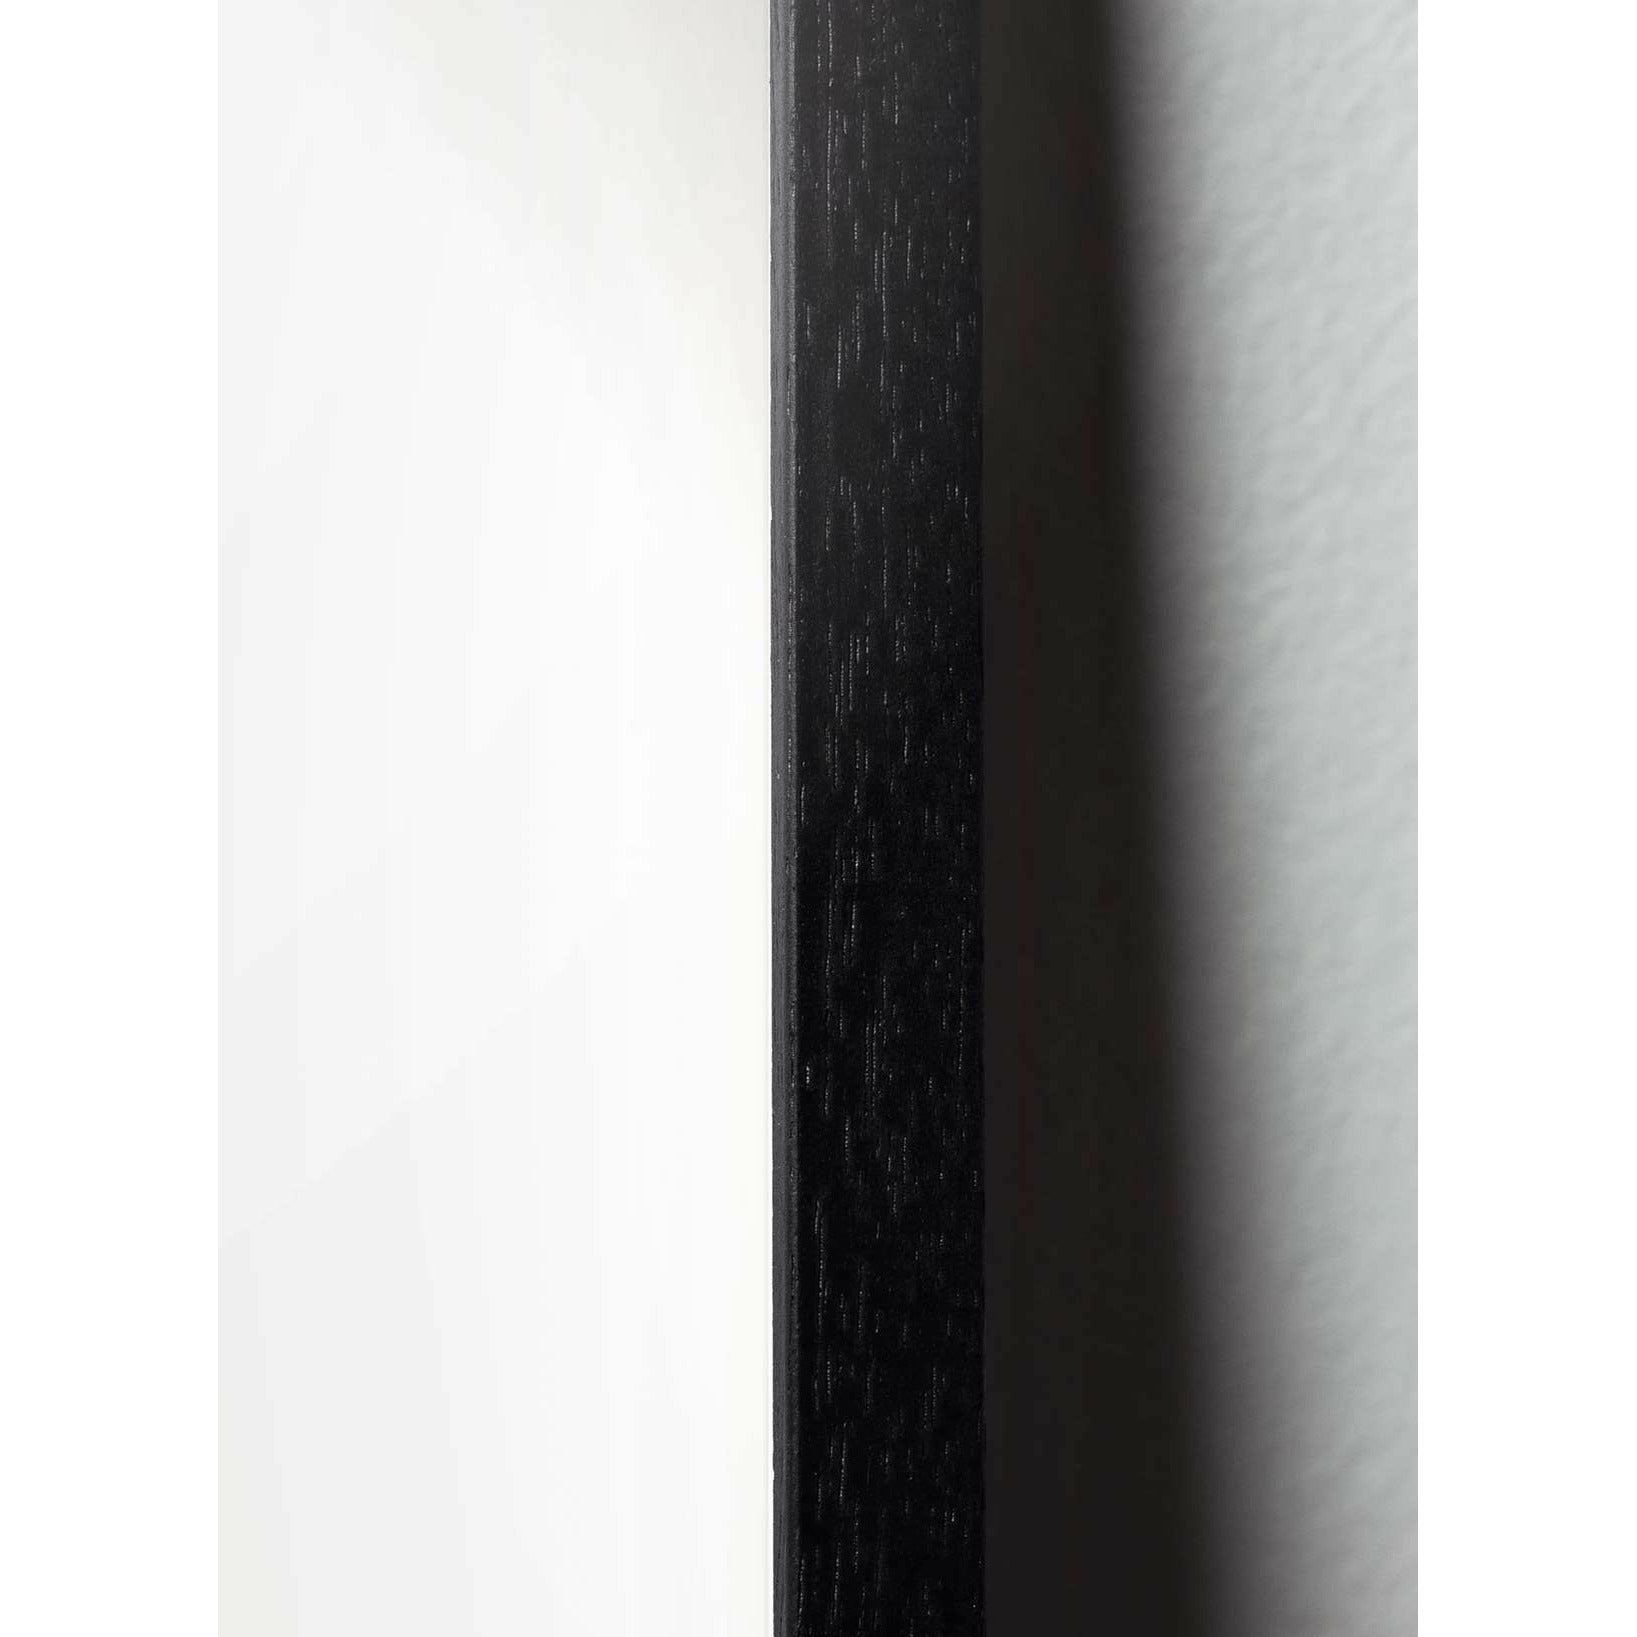 Brainchild Swan Line Poster, Rahmen aus schwarz lackiertem Holz 70 x 100 cm, weißer Hintergrund